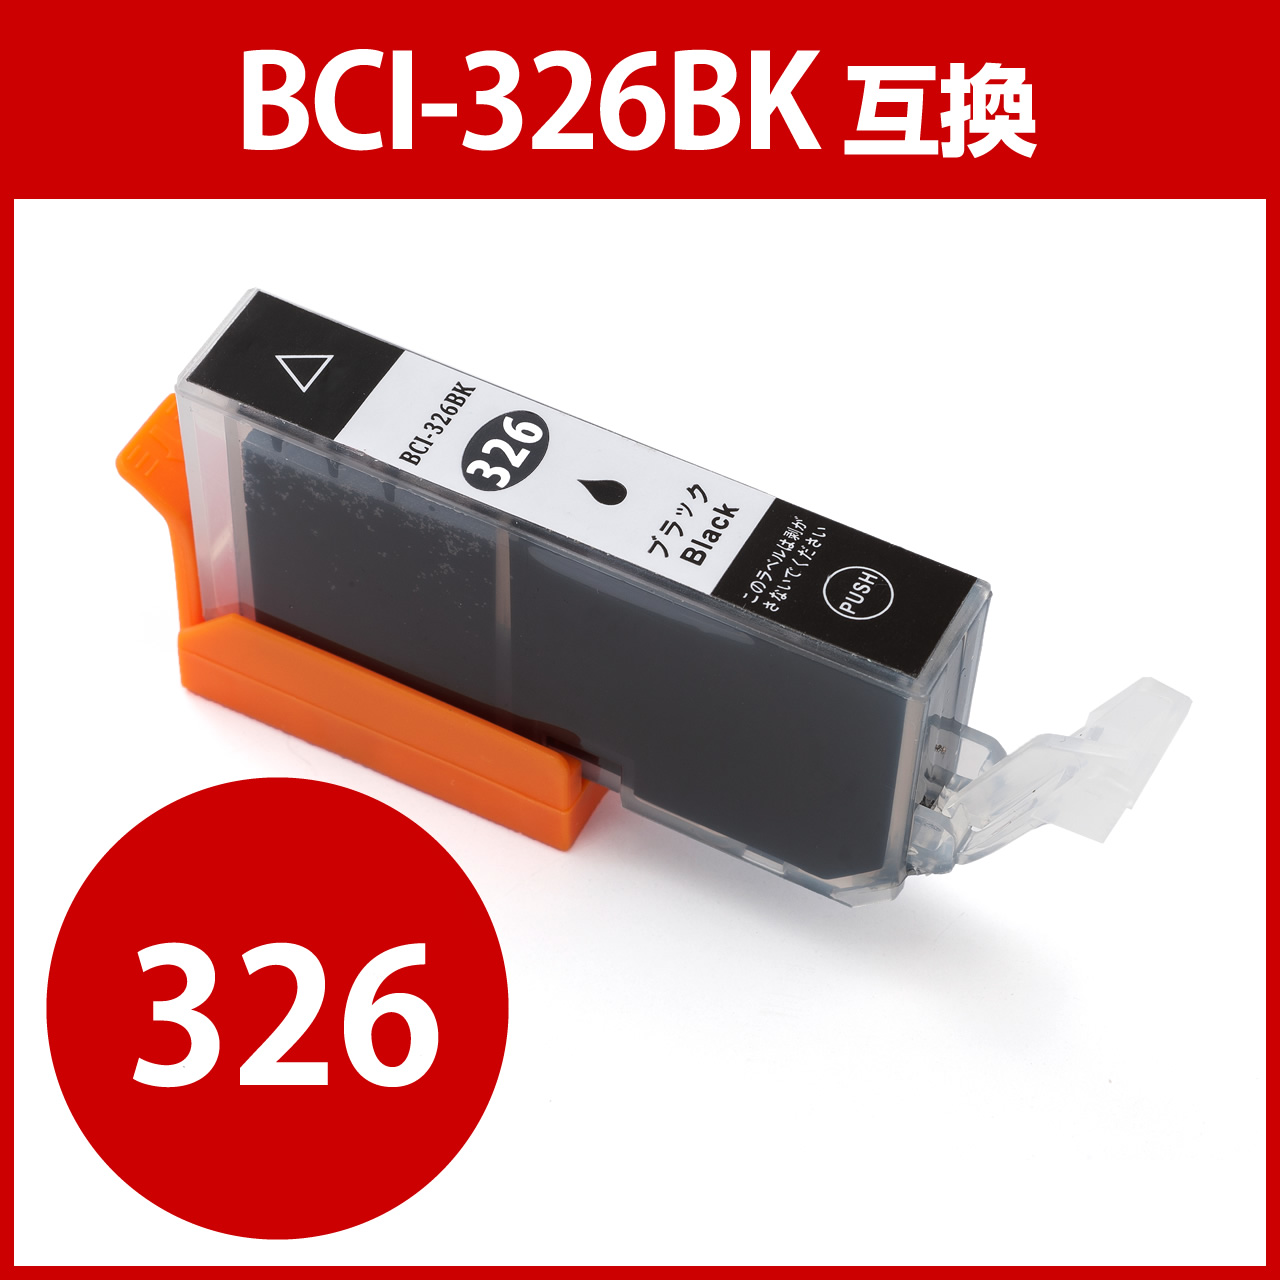 BCI-326BK Lm݊CN ubN 300-C326BN